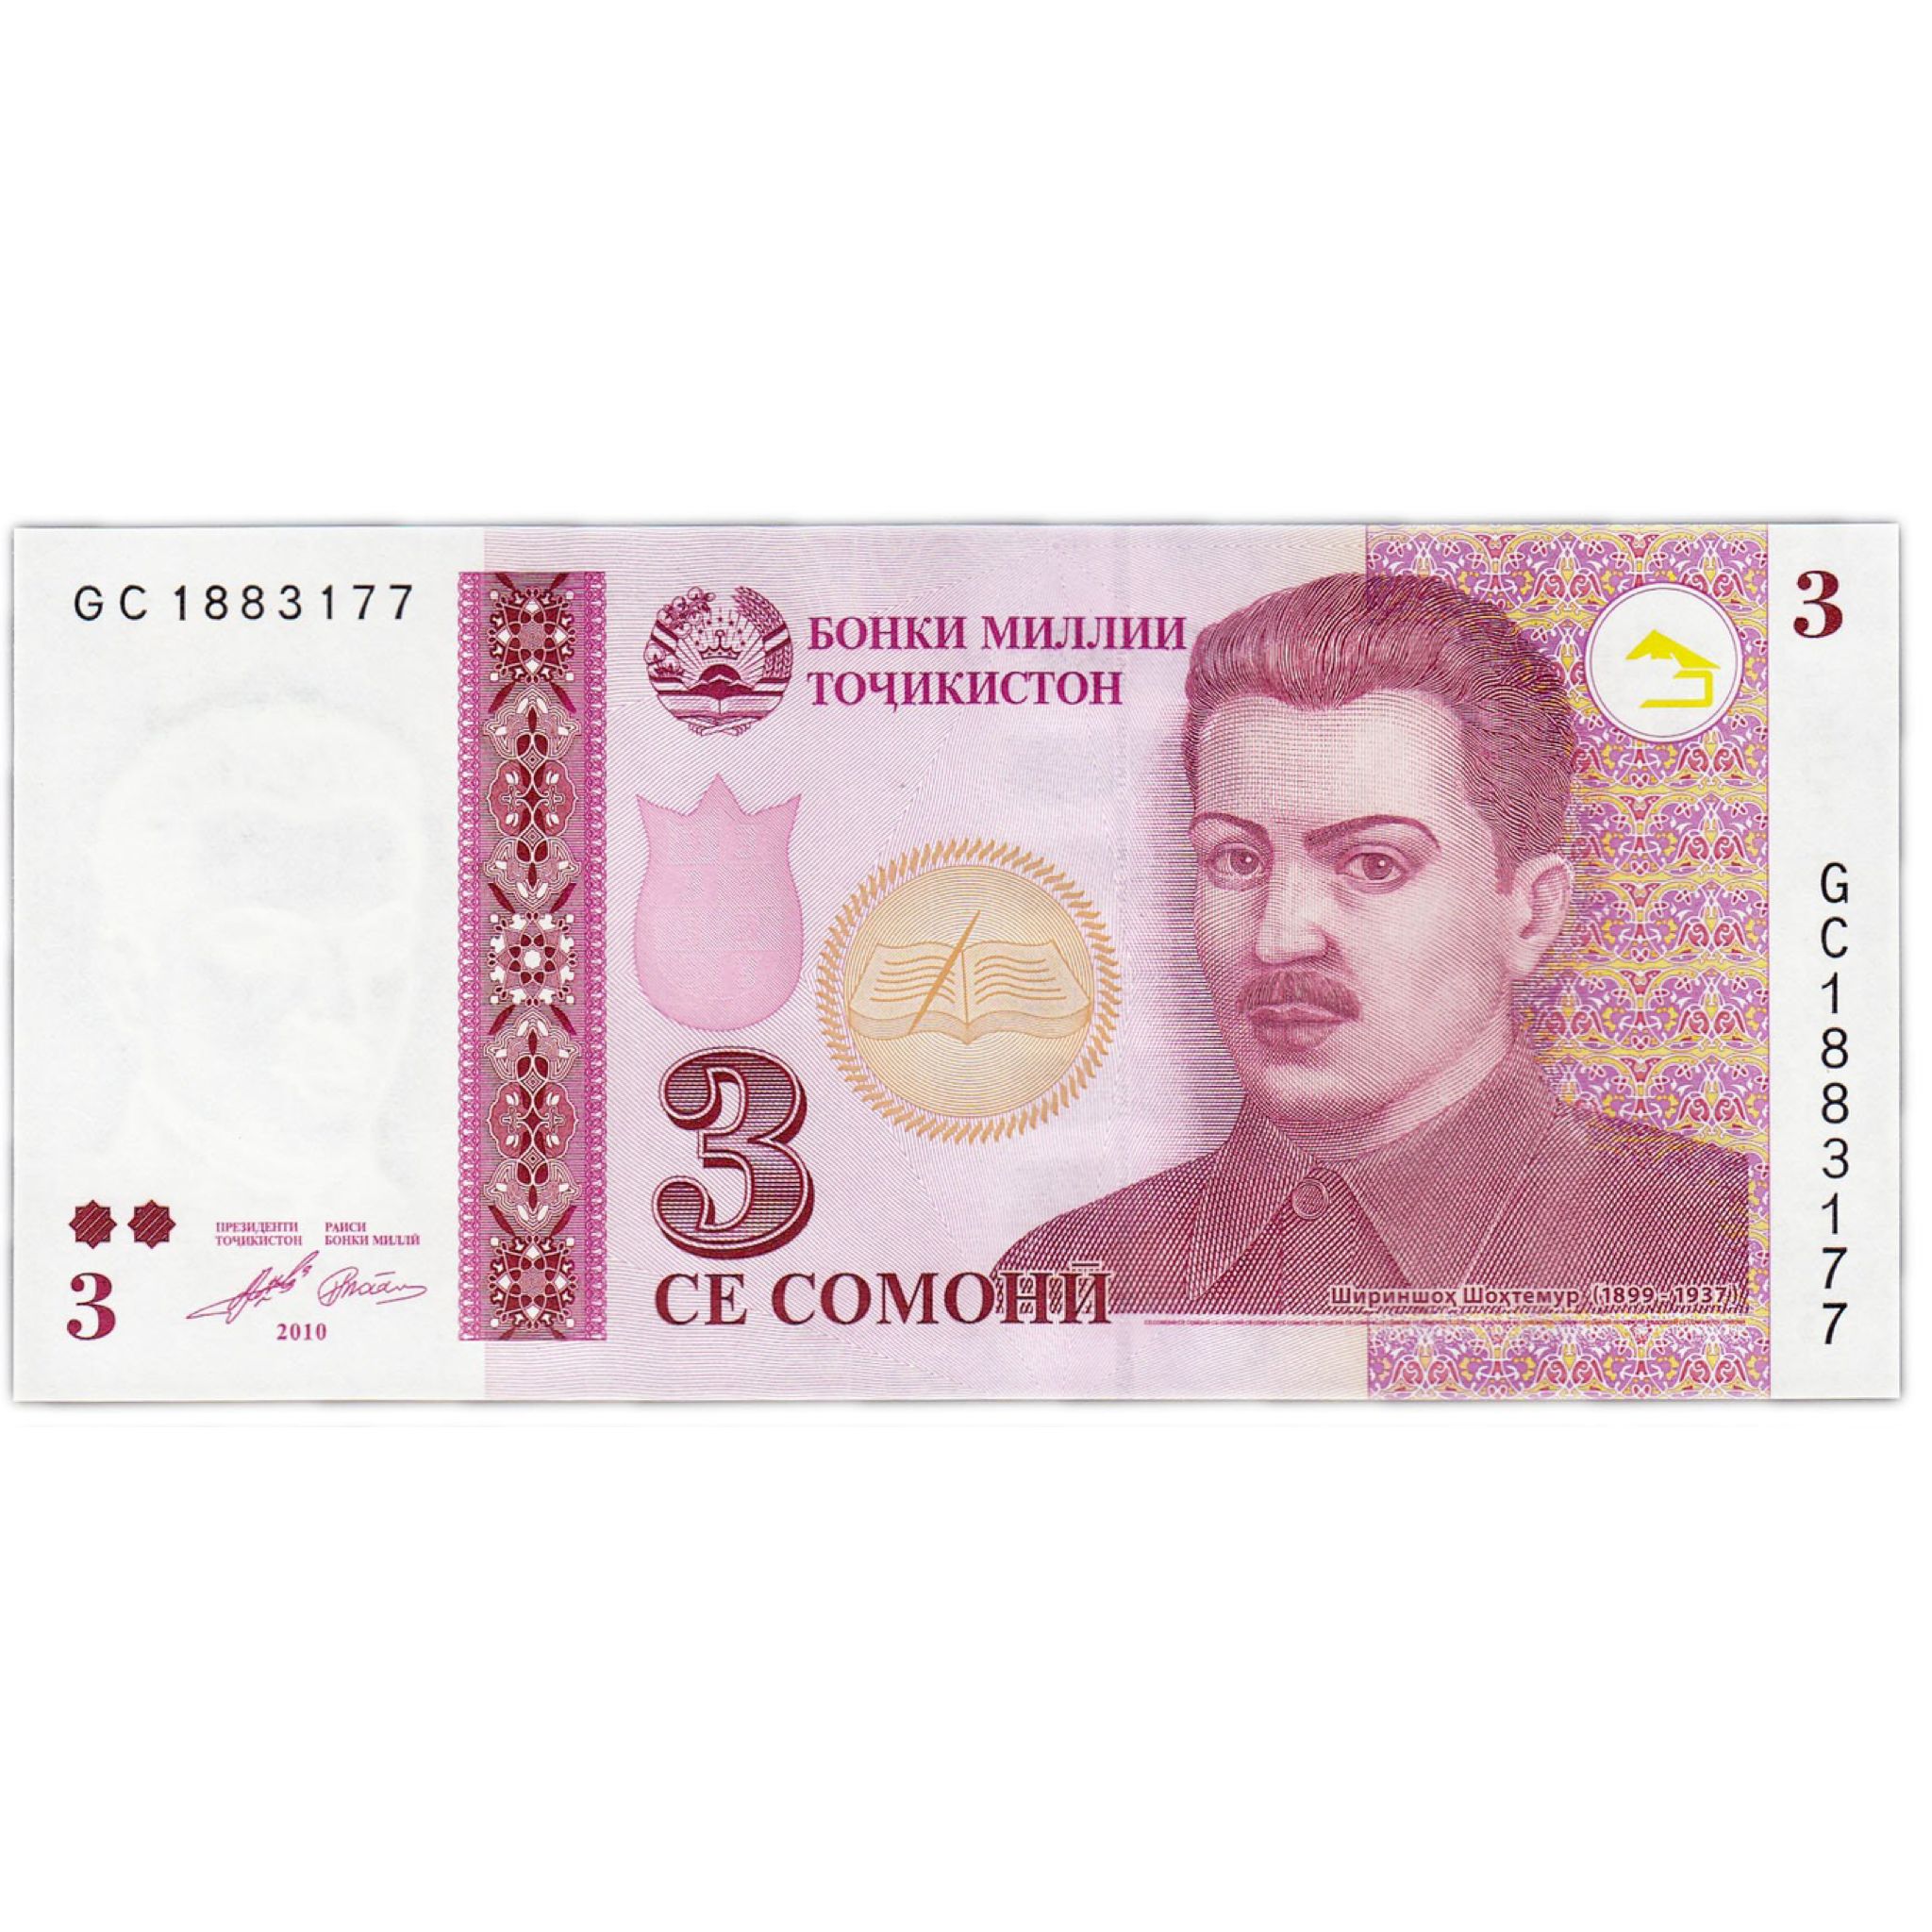 Деньги в душанбе. Деньги Таджикистана. Купюры Таджикистана. Таджикские банкноты. Денежные купюры Таджикистана.